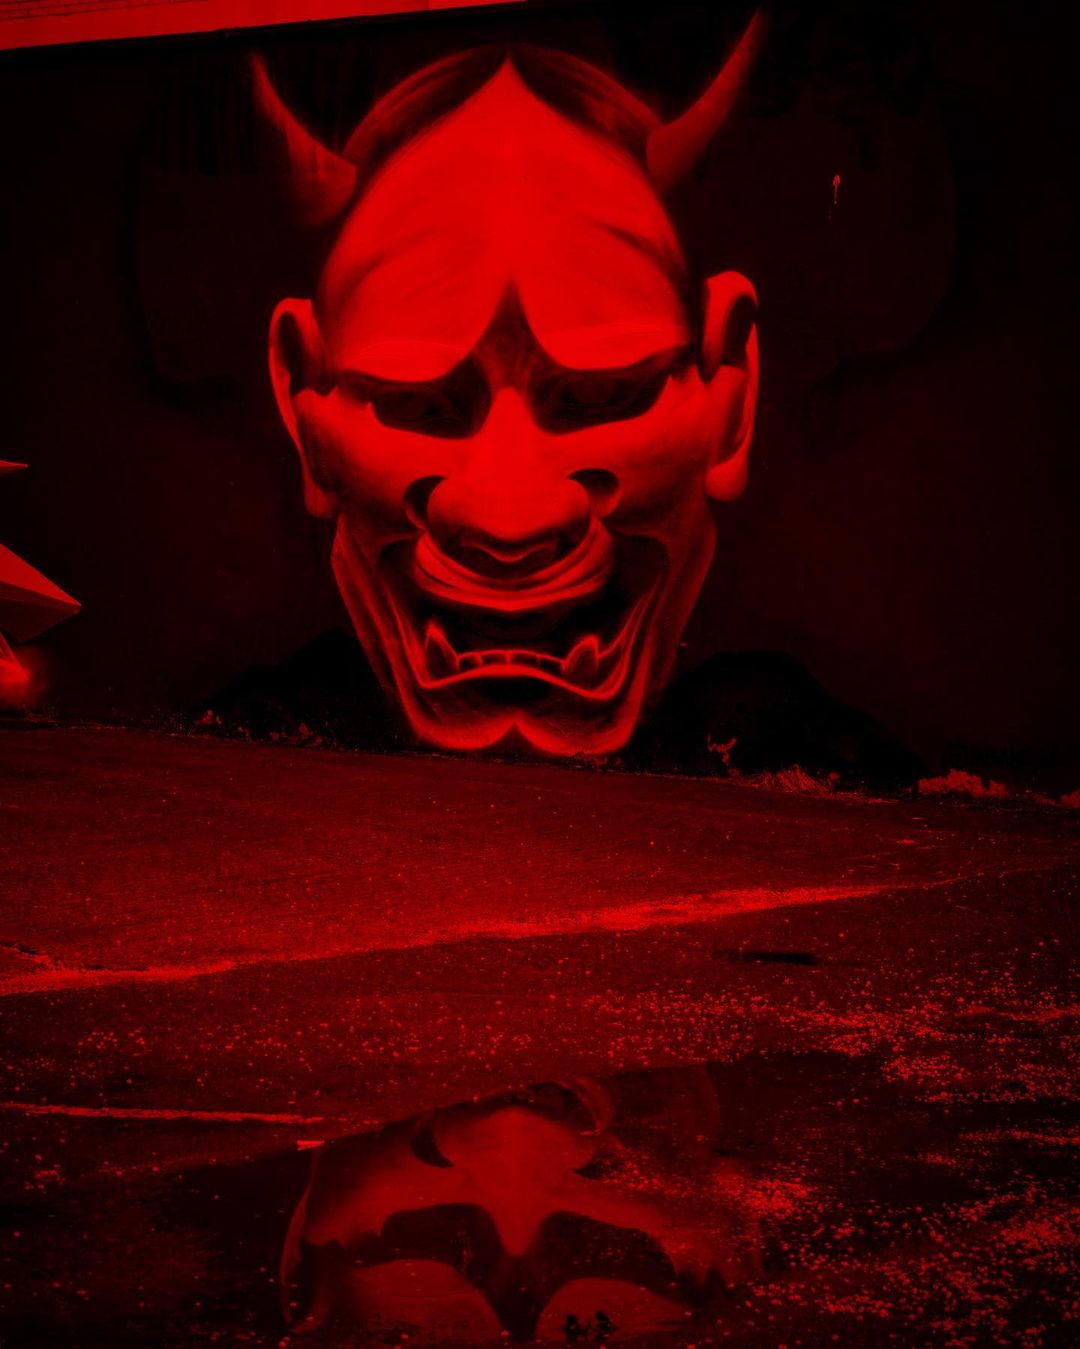 Un masque terrifiant se découvre avec le rouge de l'oeuvre